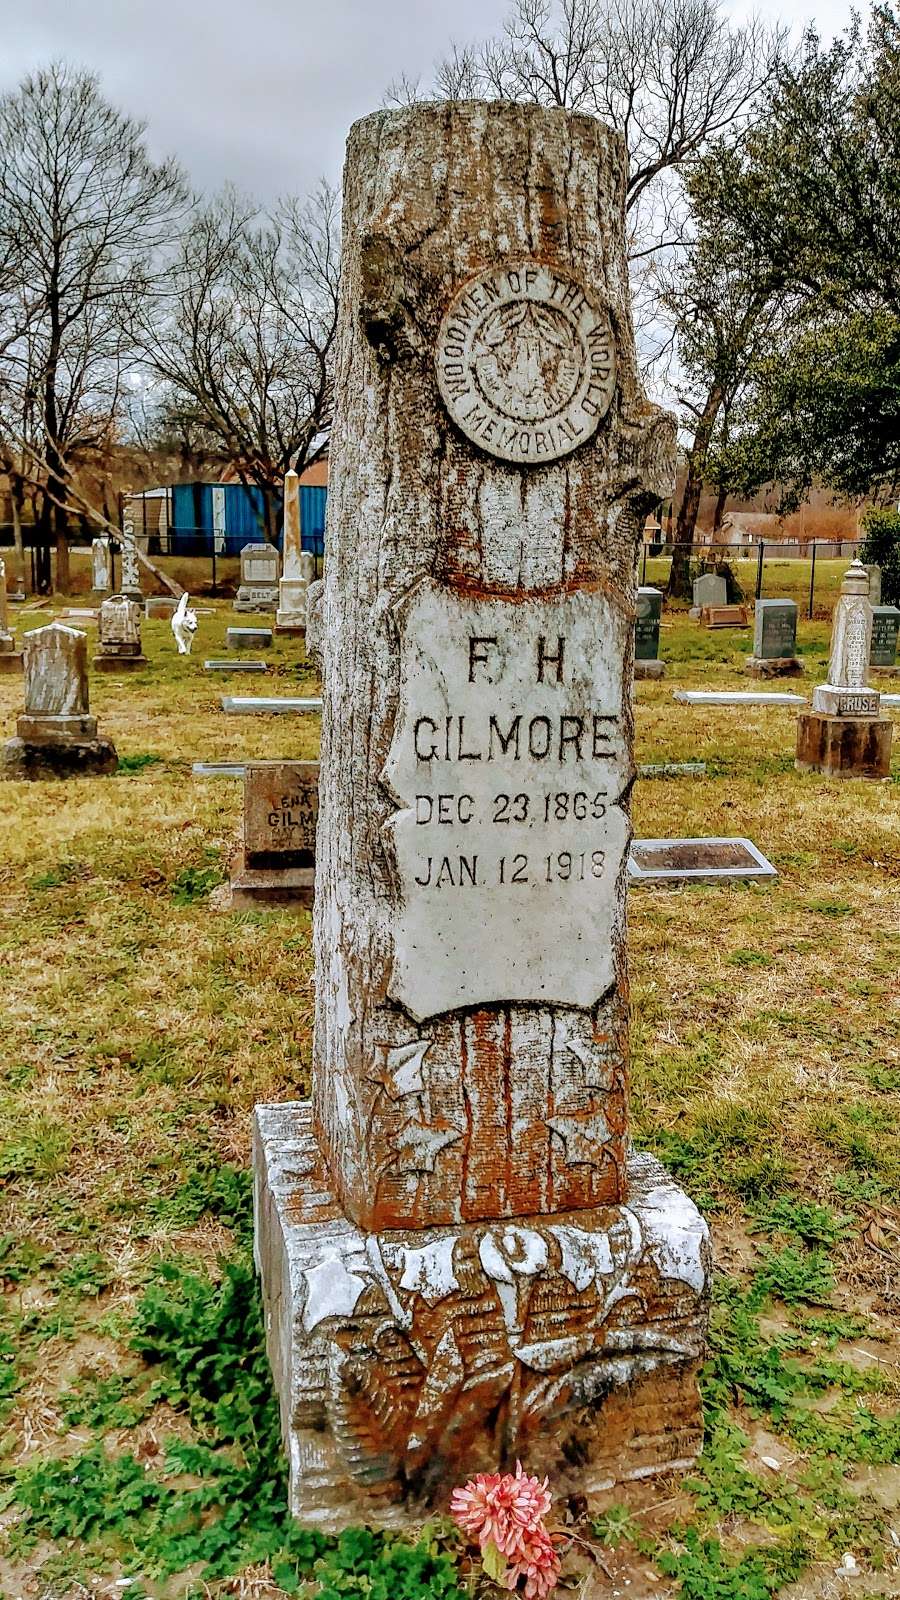 Lisbon Cemetery | Dallas, TX 75216, USA